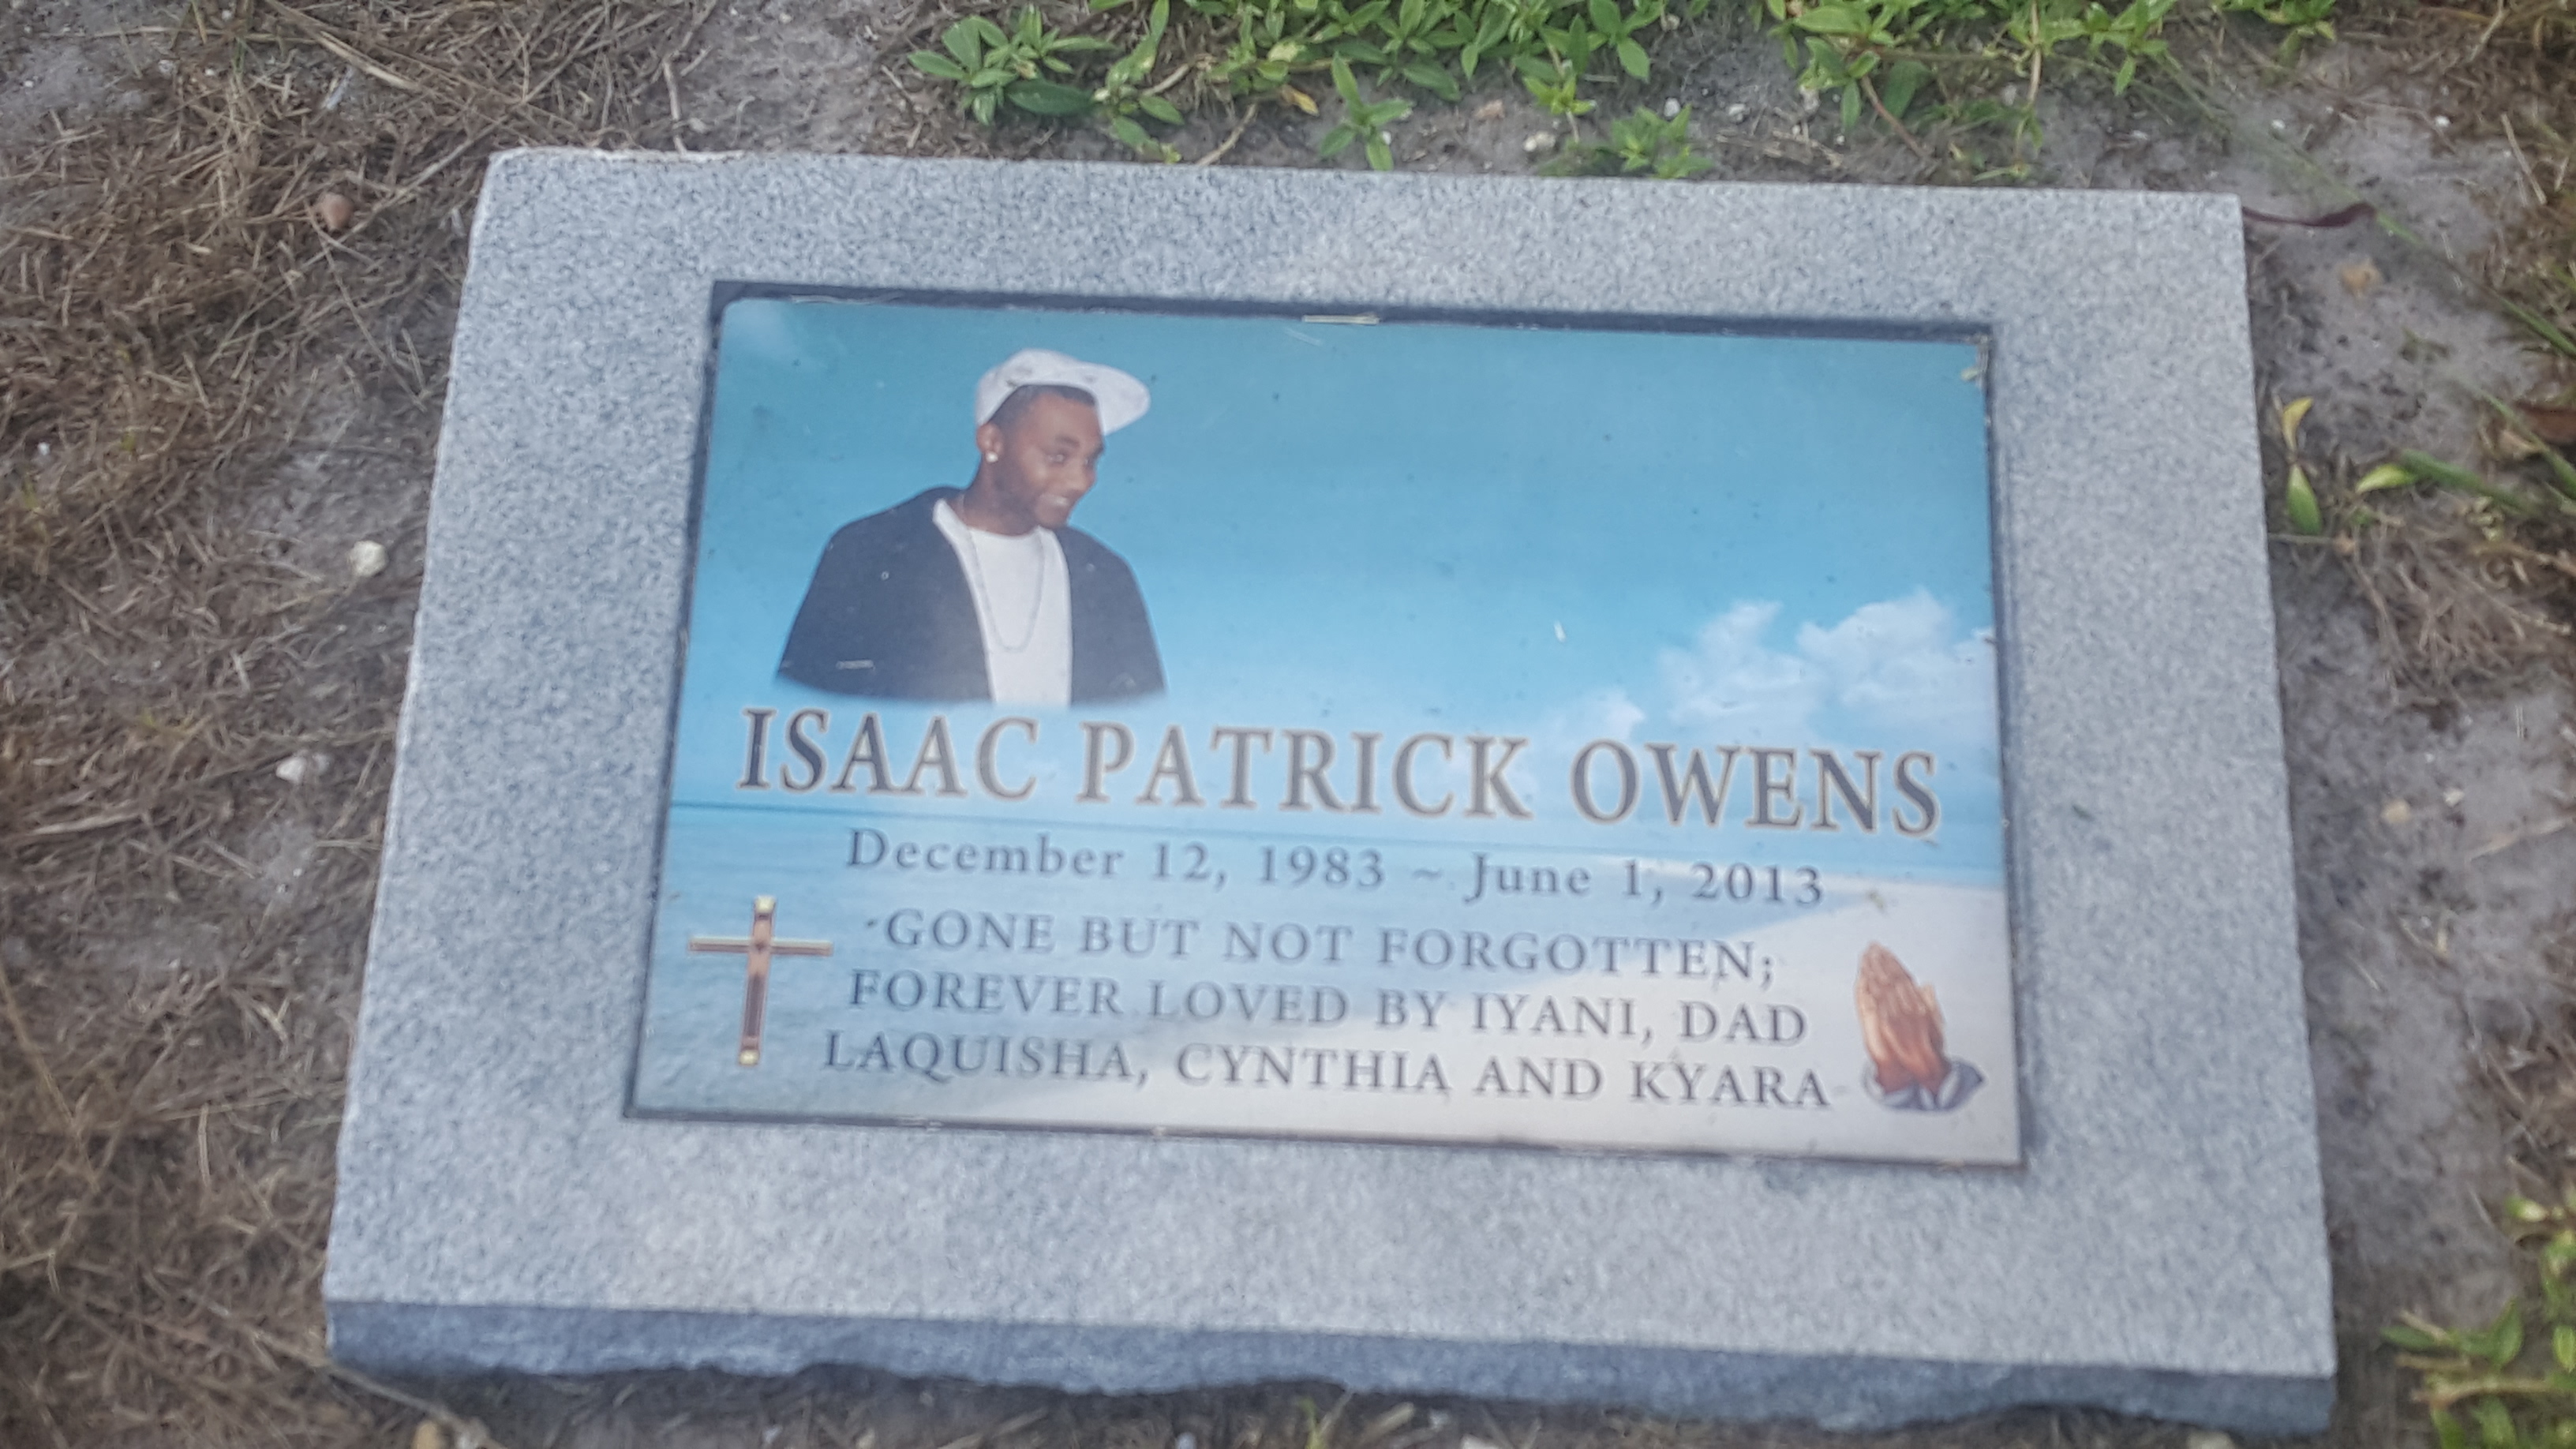 Isaac Patrick Owens